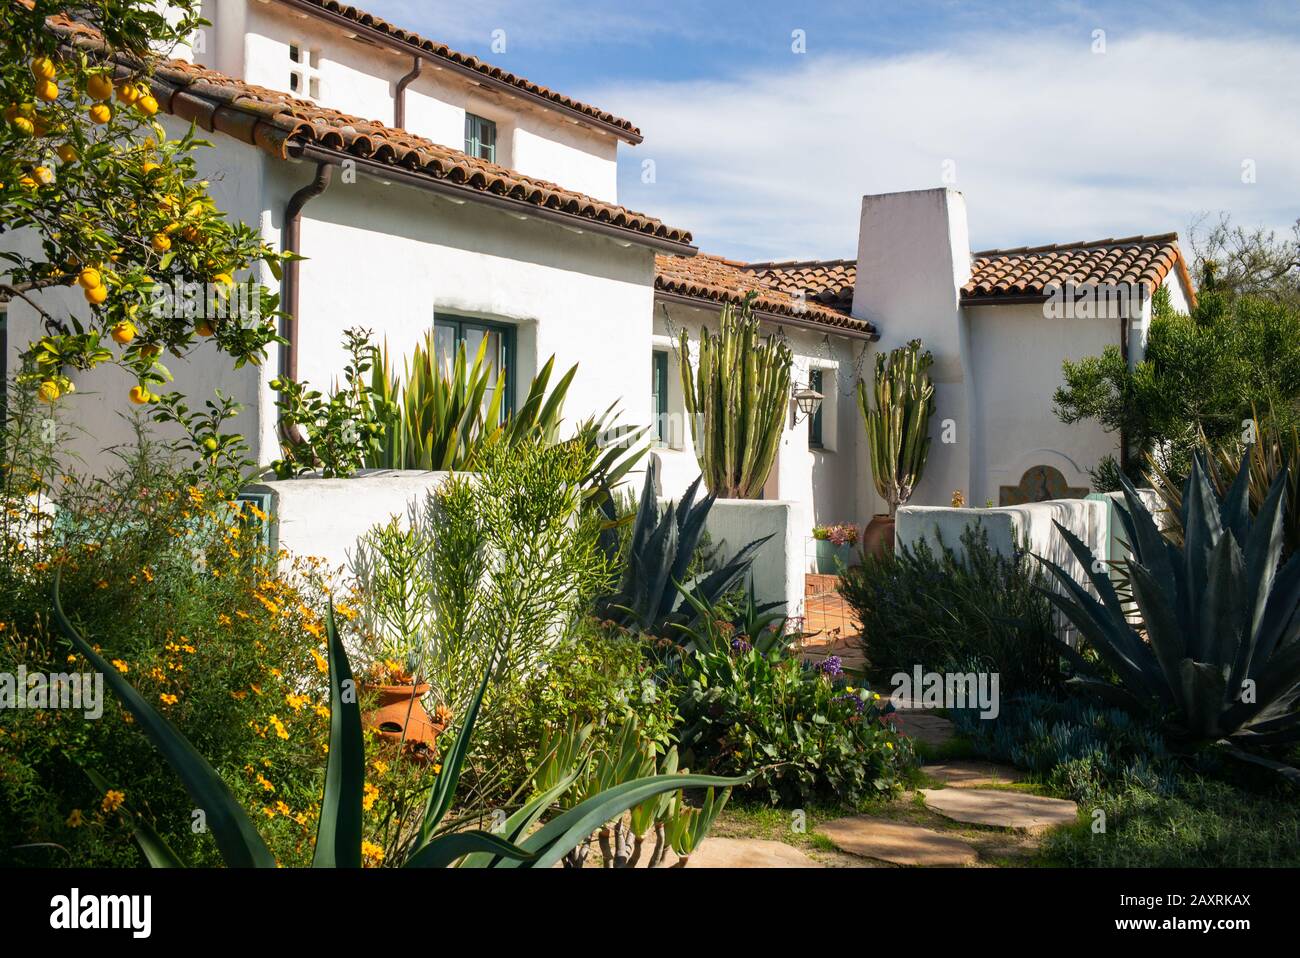 Casa e ingresso in stile spagnolo della California per antonomasia con piante autoctone, succulenti e un bellissimo design paesaggistico Foto Stock